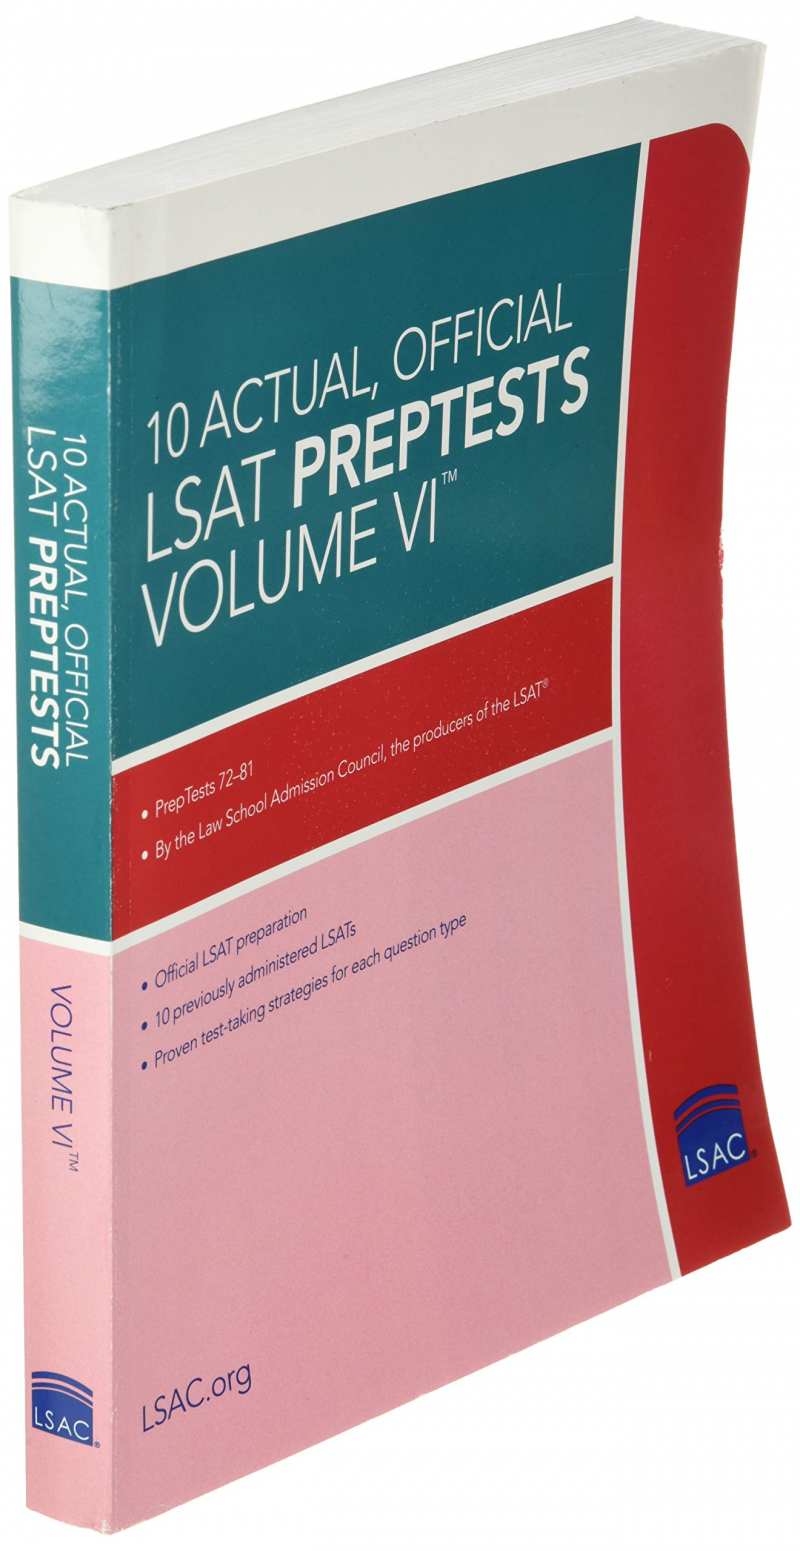 10 Official LSAT PrepTests Volume VI